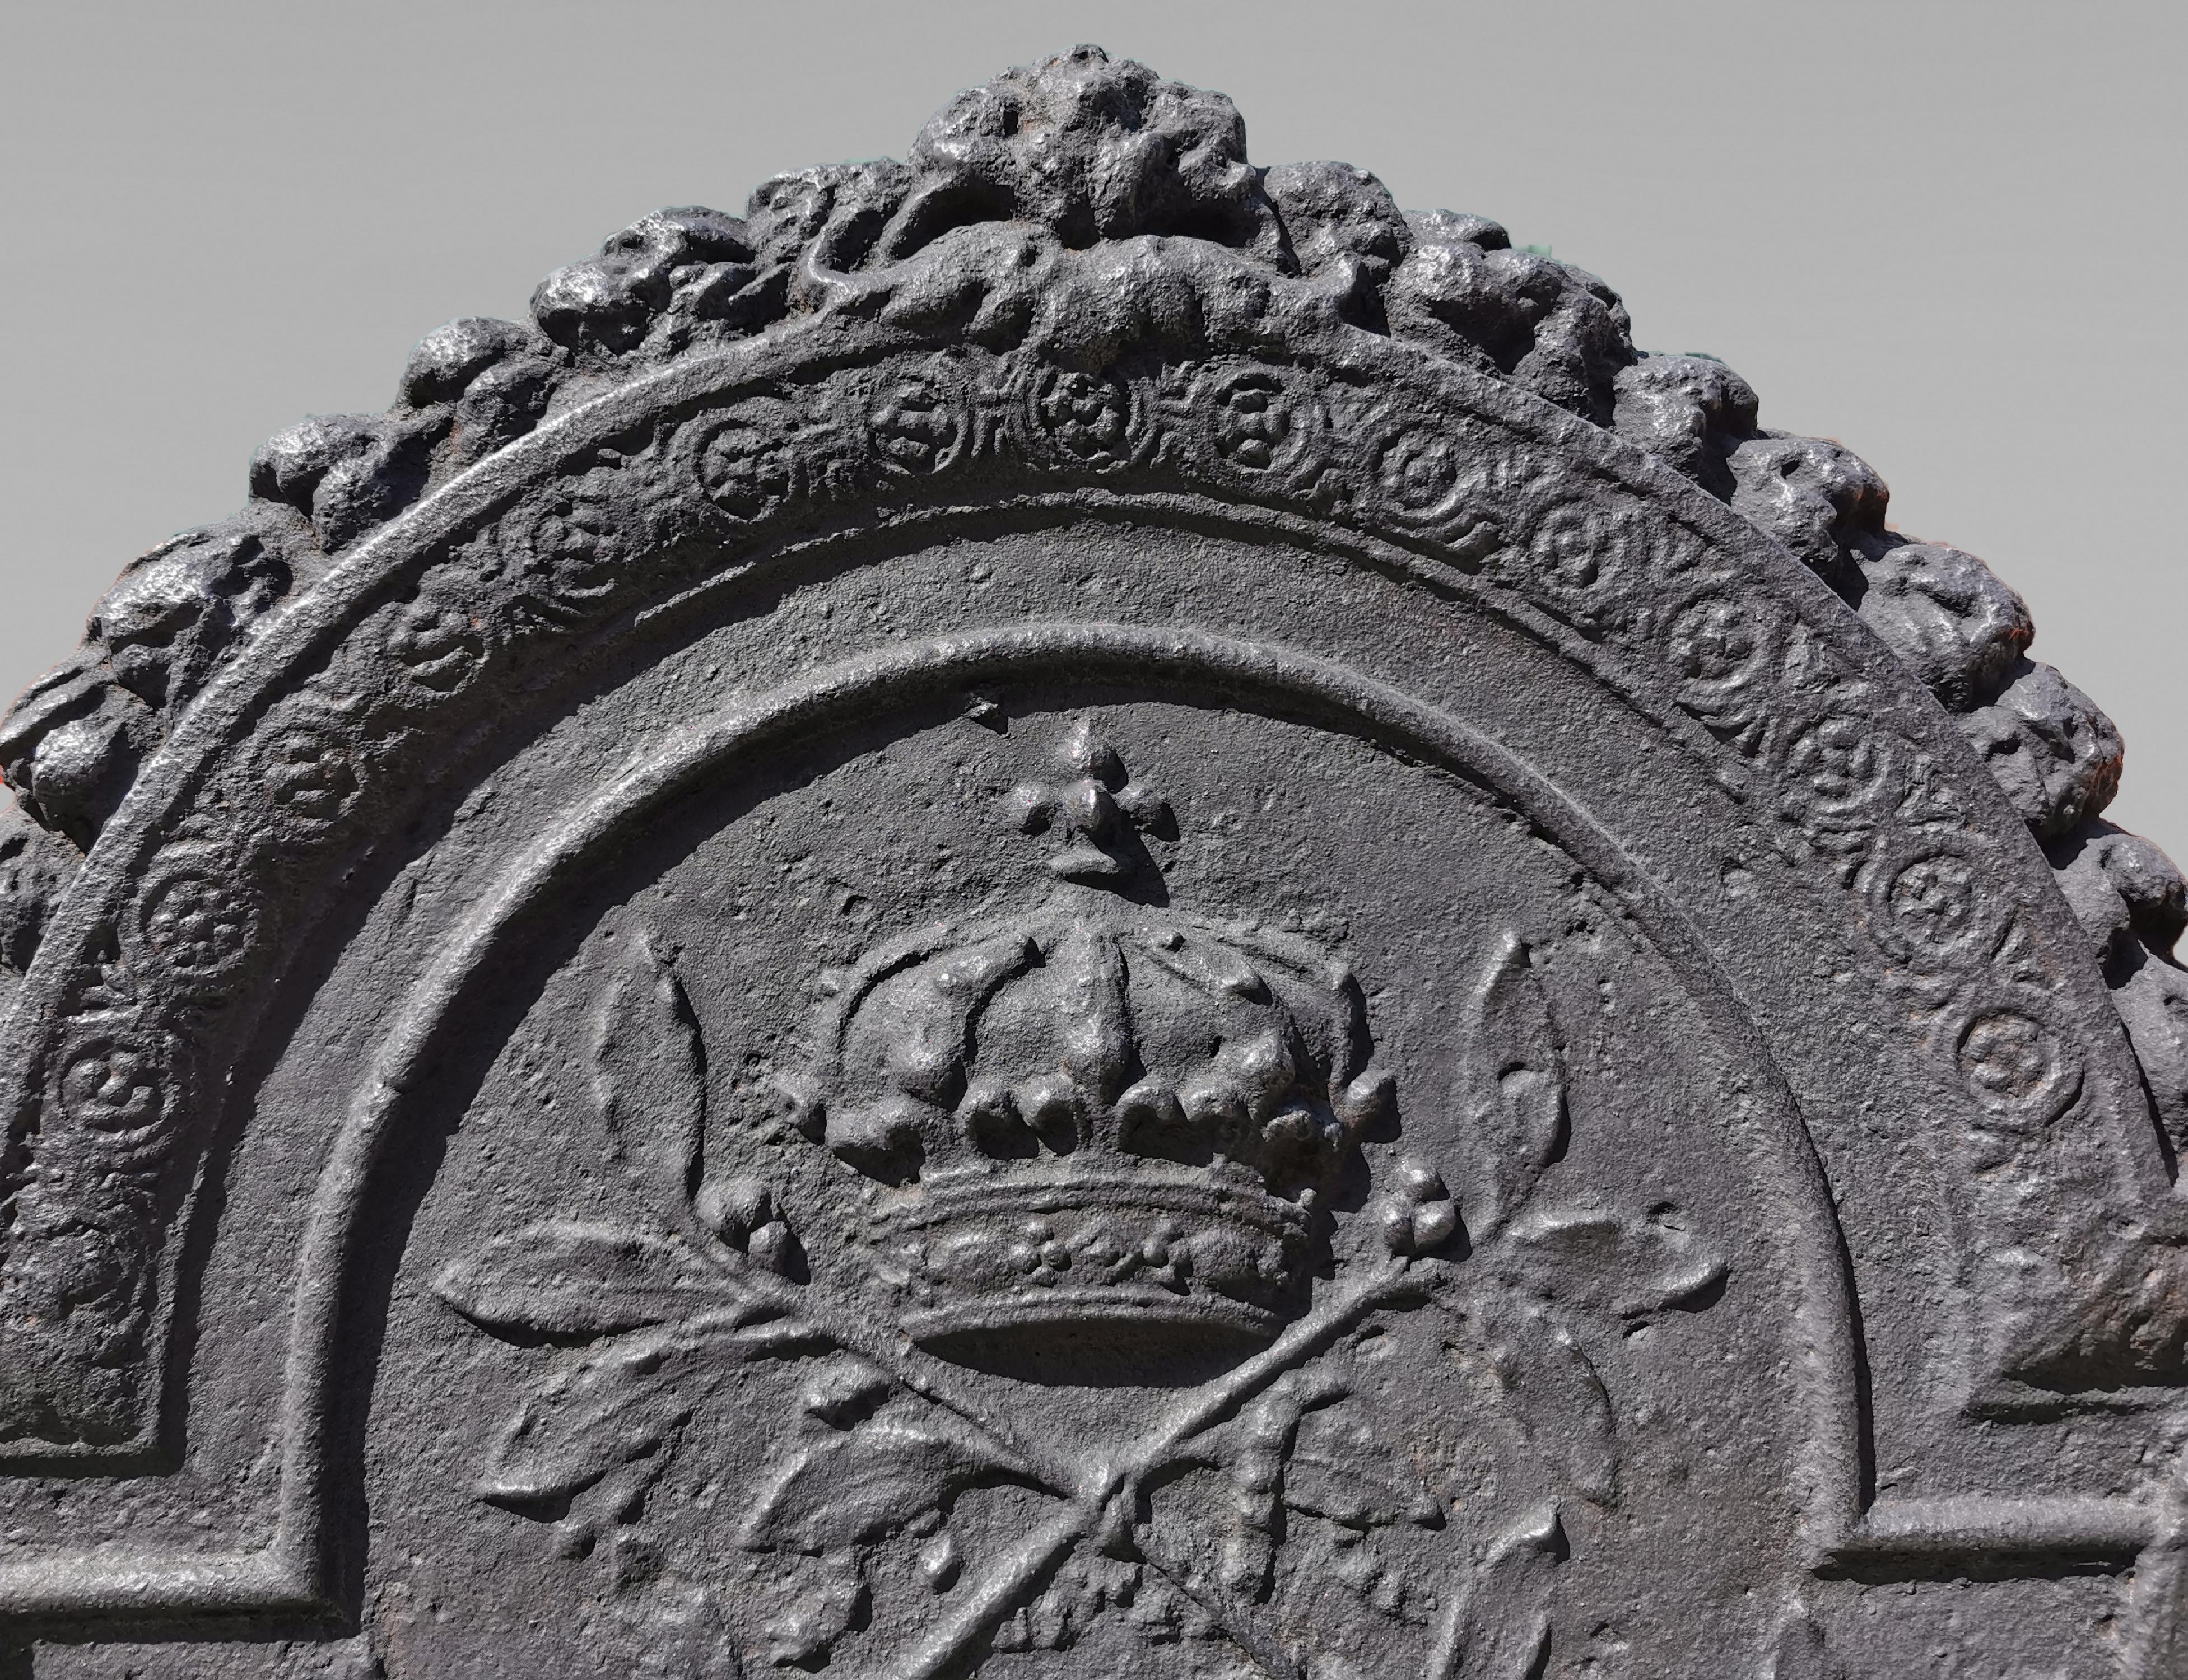 Dieser schöne gusseiserne Kamin aus der Zeit um 1700 ist mit einem seltenen und reichen Dekor verziert.
Seine Form ist charakteristisch für die Anfänge des 18. Jahrhunderts, die Spitze in einem Bogen eines Kreises Form wird von zwei Hähnen, deren